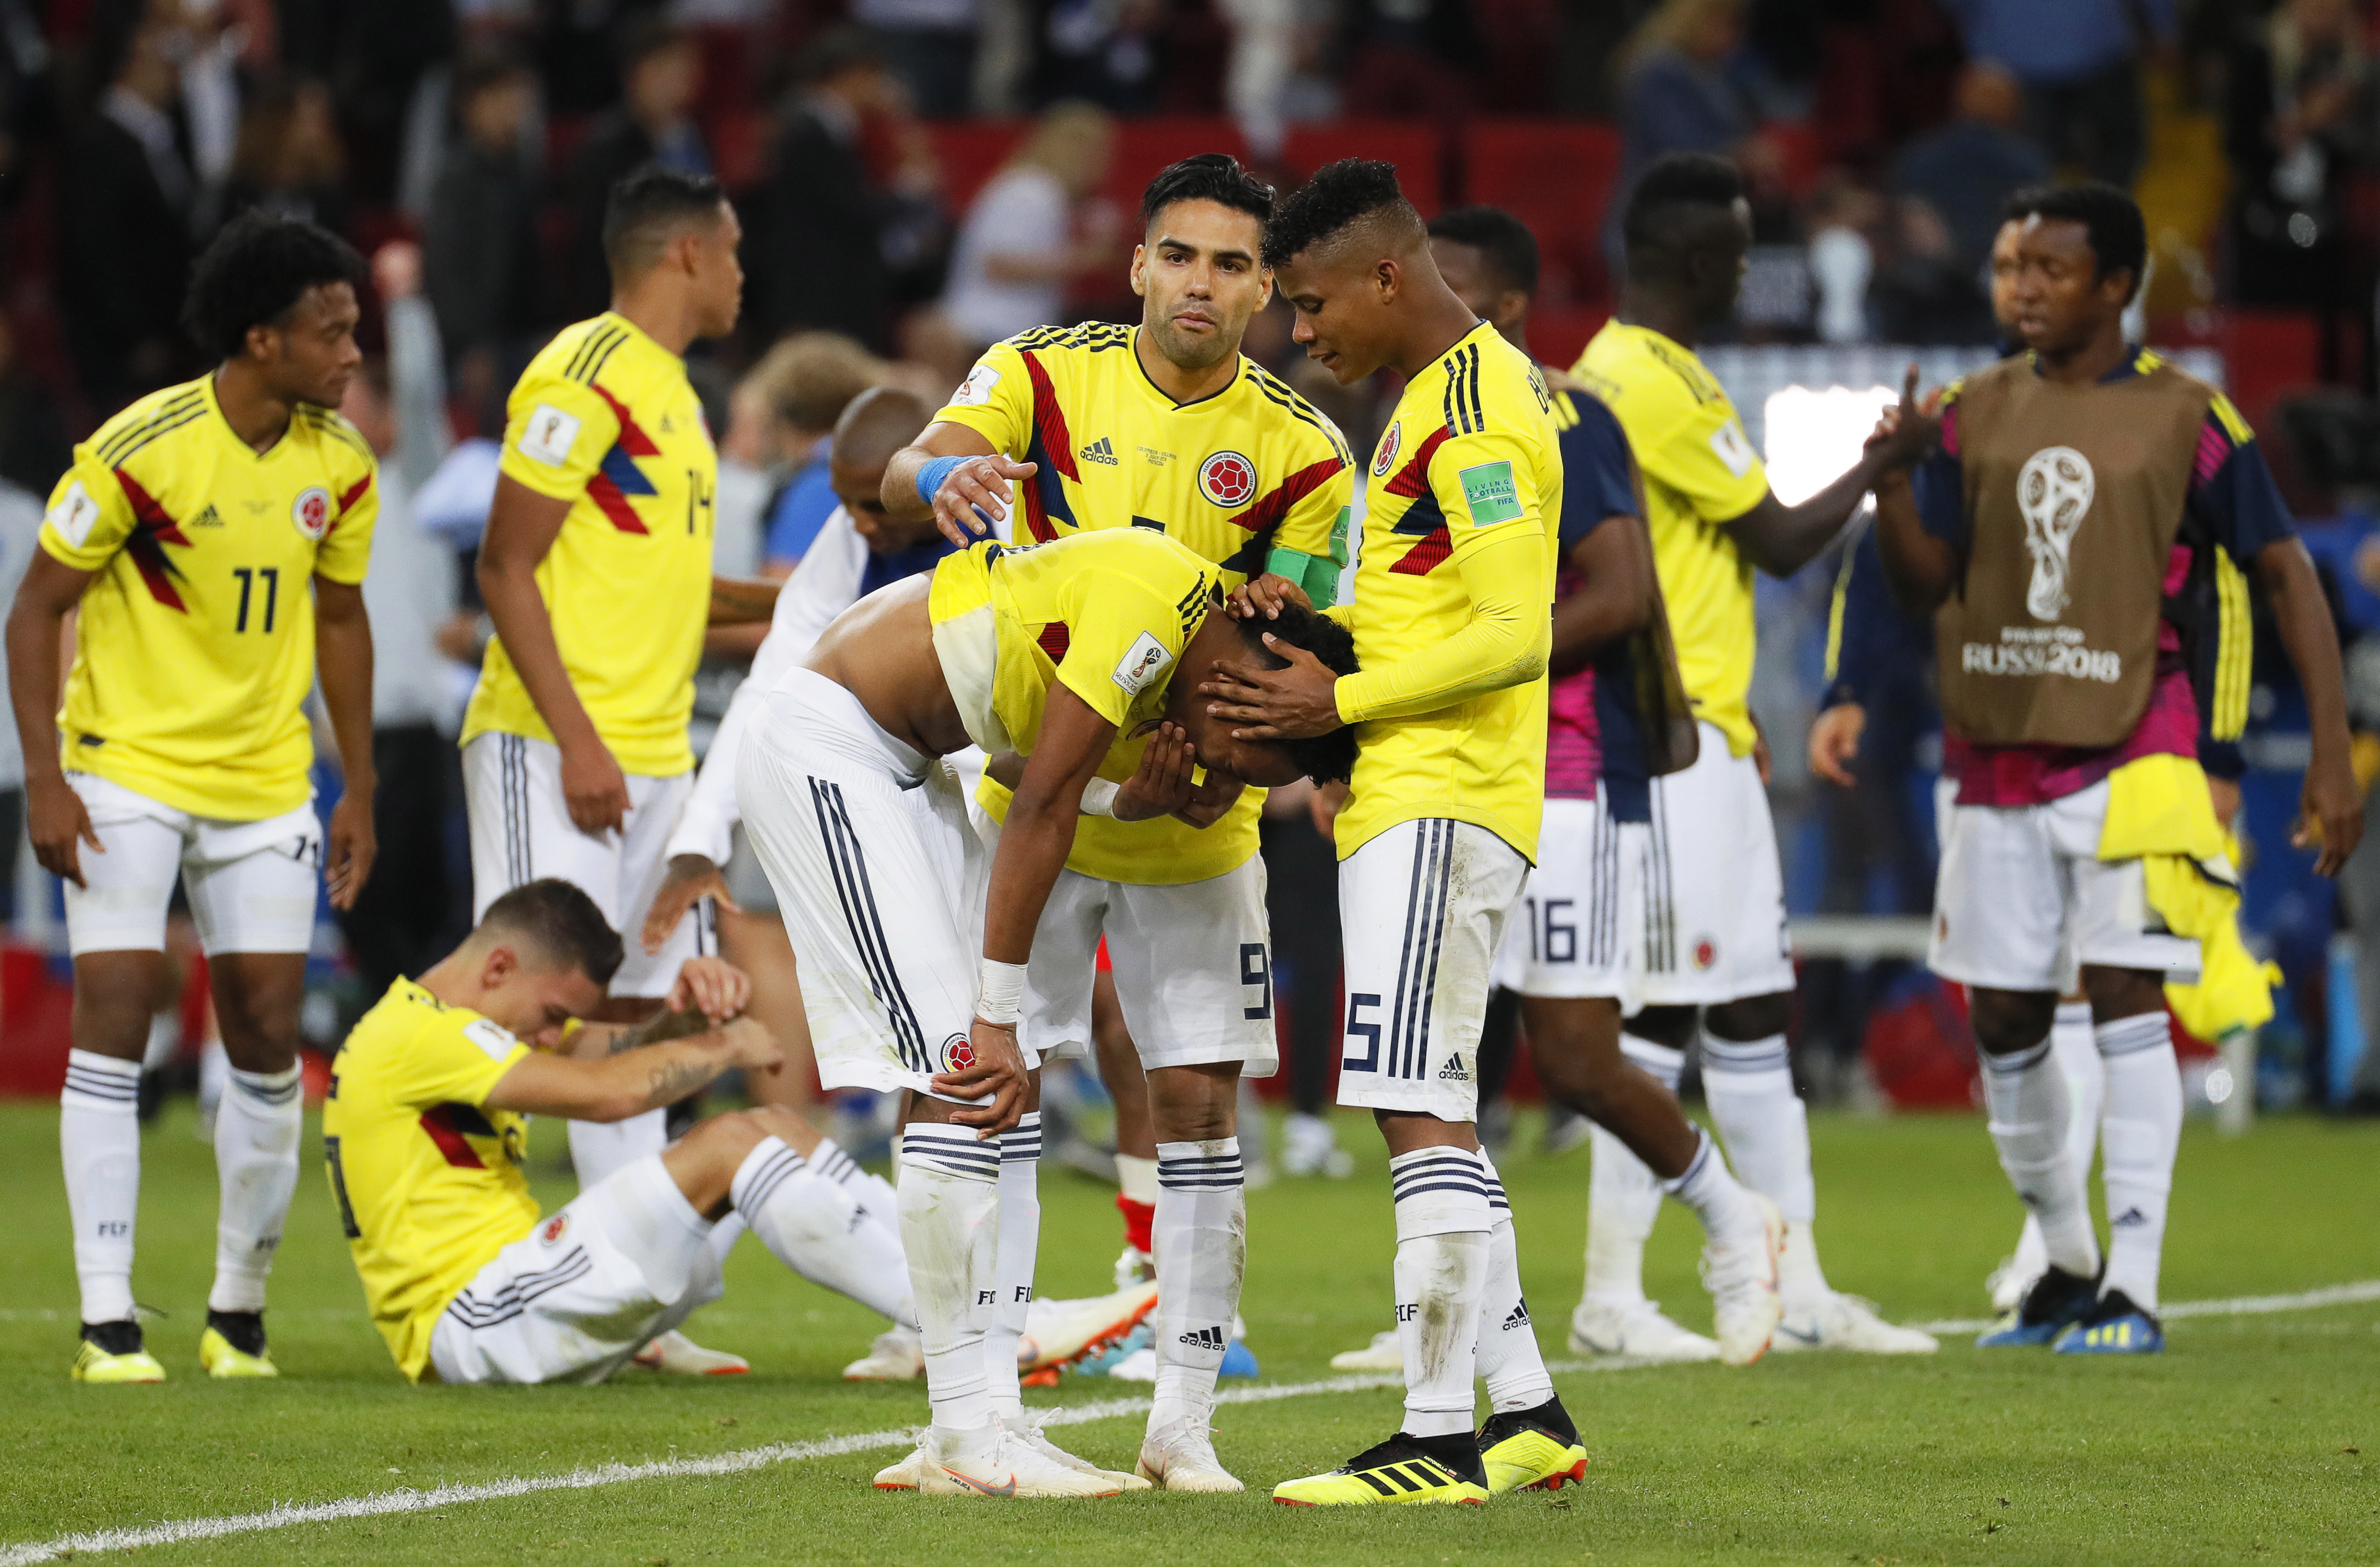 Μουντιάλ: Κολομβιανοί ποδοσφαιριστές δέχονται απειλές για τη ζωή τους